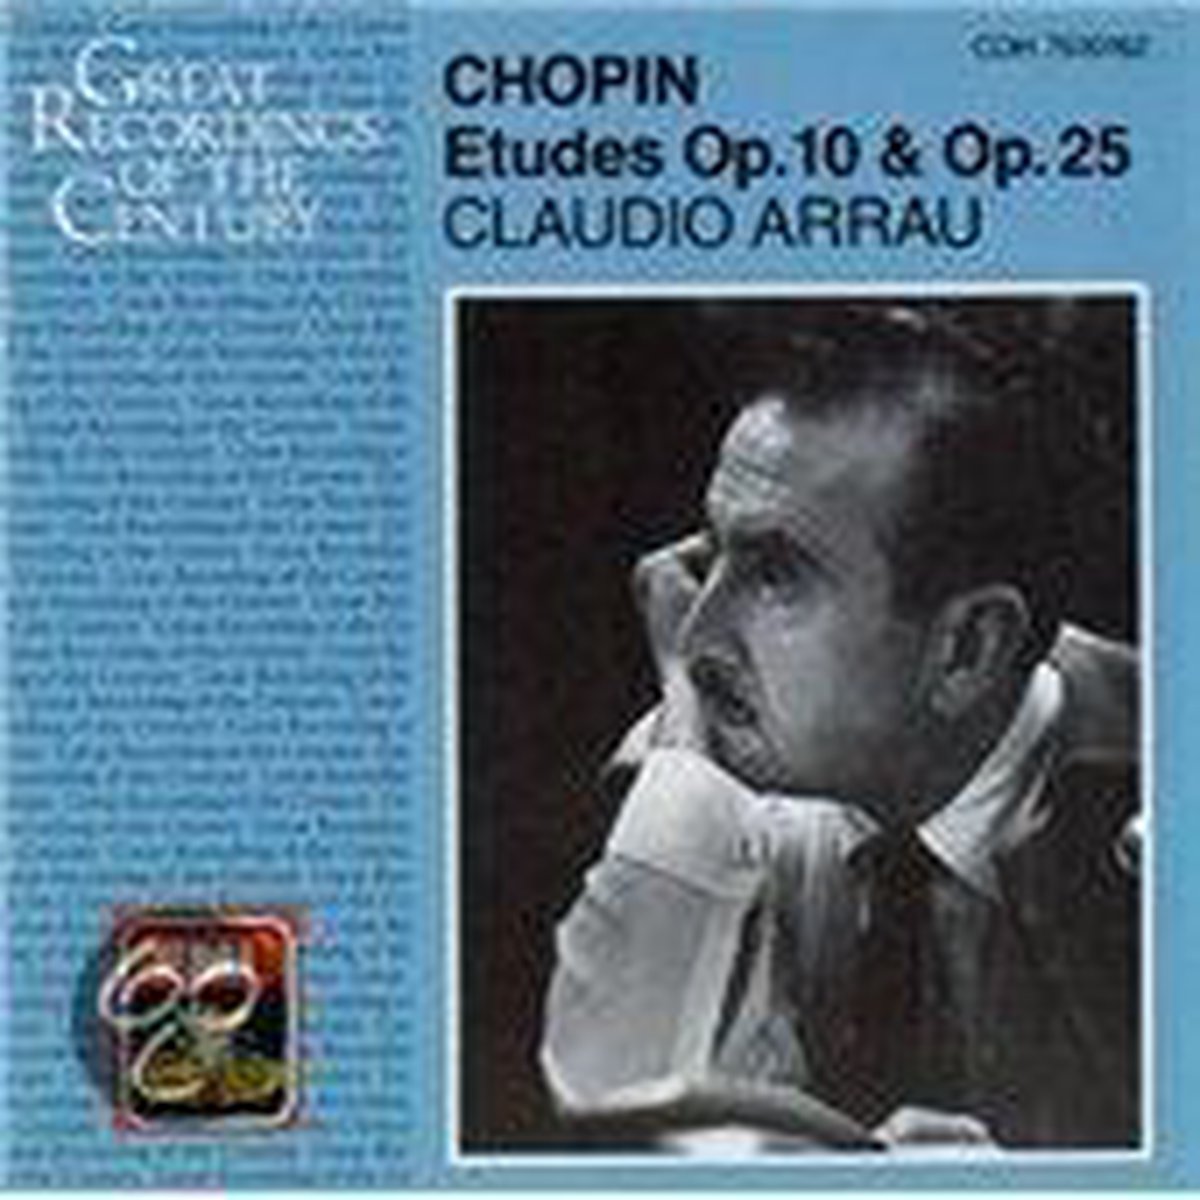 Chopin: Etudes Op 10 & Op 25 / Claudio Arrau - Claudio Arrau